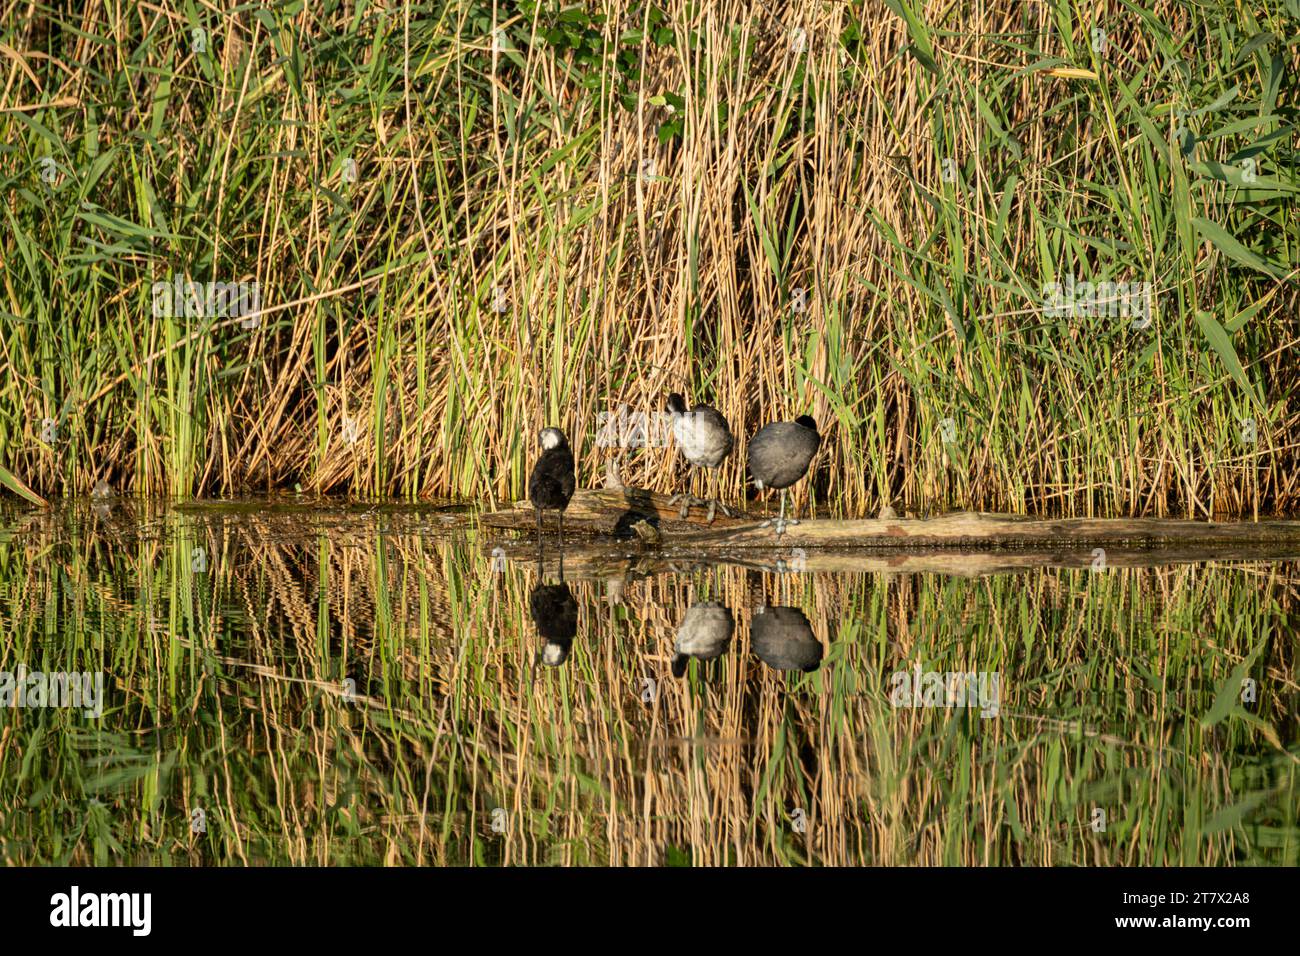 Eurasische Hühnchenvögel sitzen auf Baumstamm in grünem Schilf im Wasser mit Reflexion unter strahlender Sonne, gewöhnliche Hühnchenvögel, die Federn aus der Nähe reinigen. Wildl Stockfoto